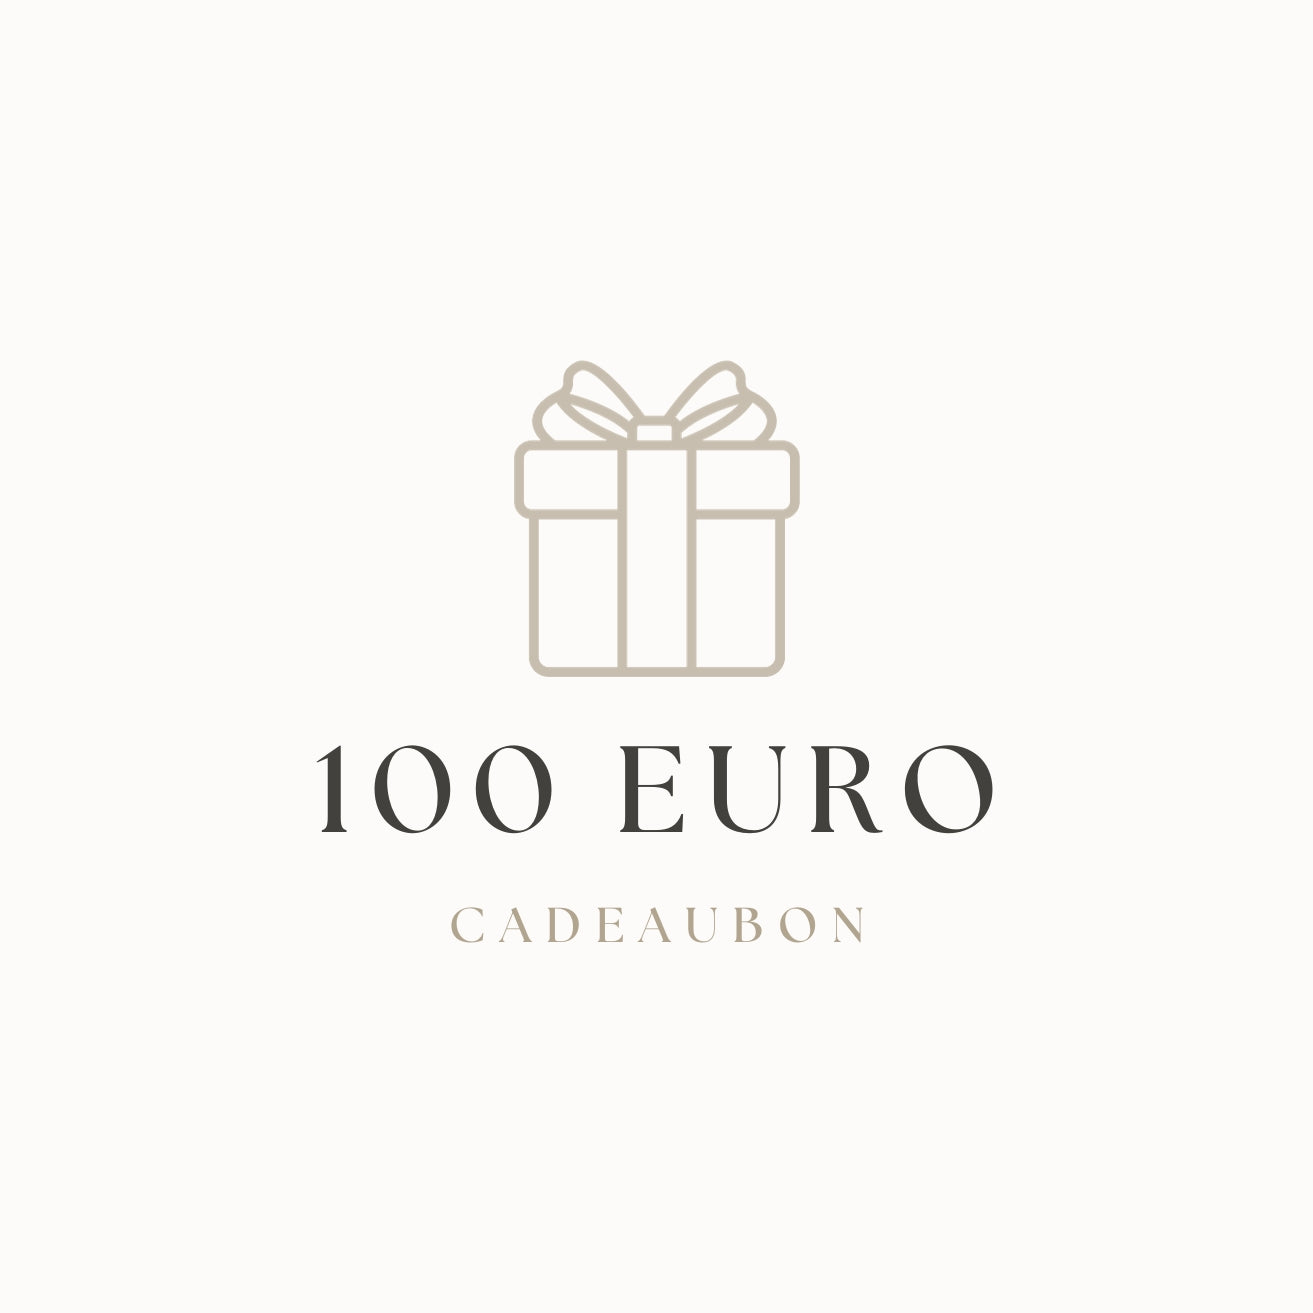 Chèque cadeau | 100 euros